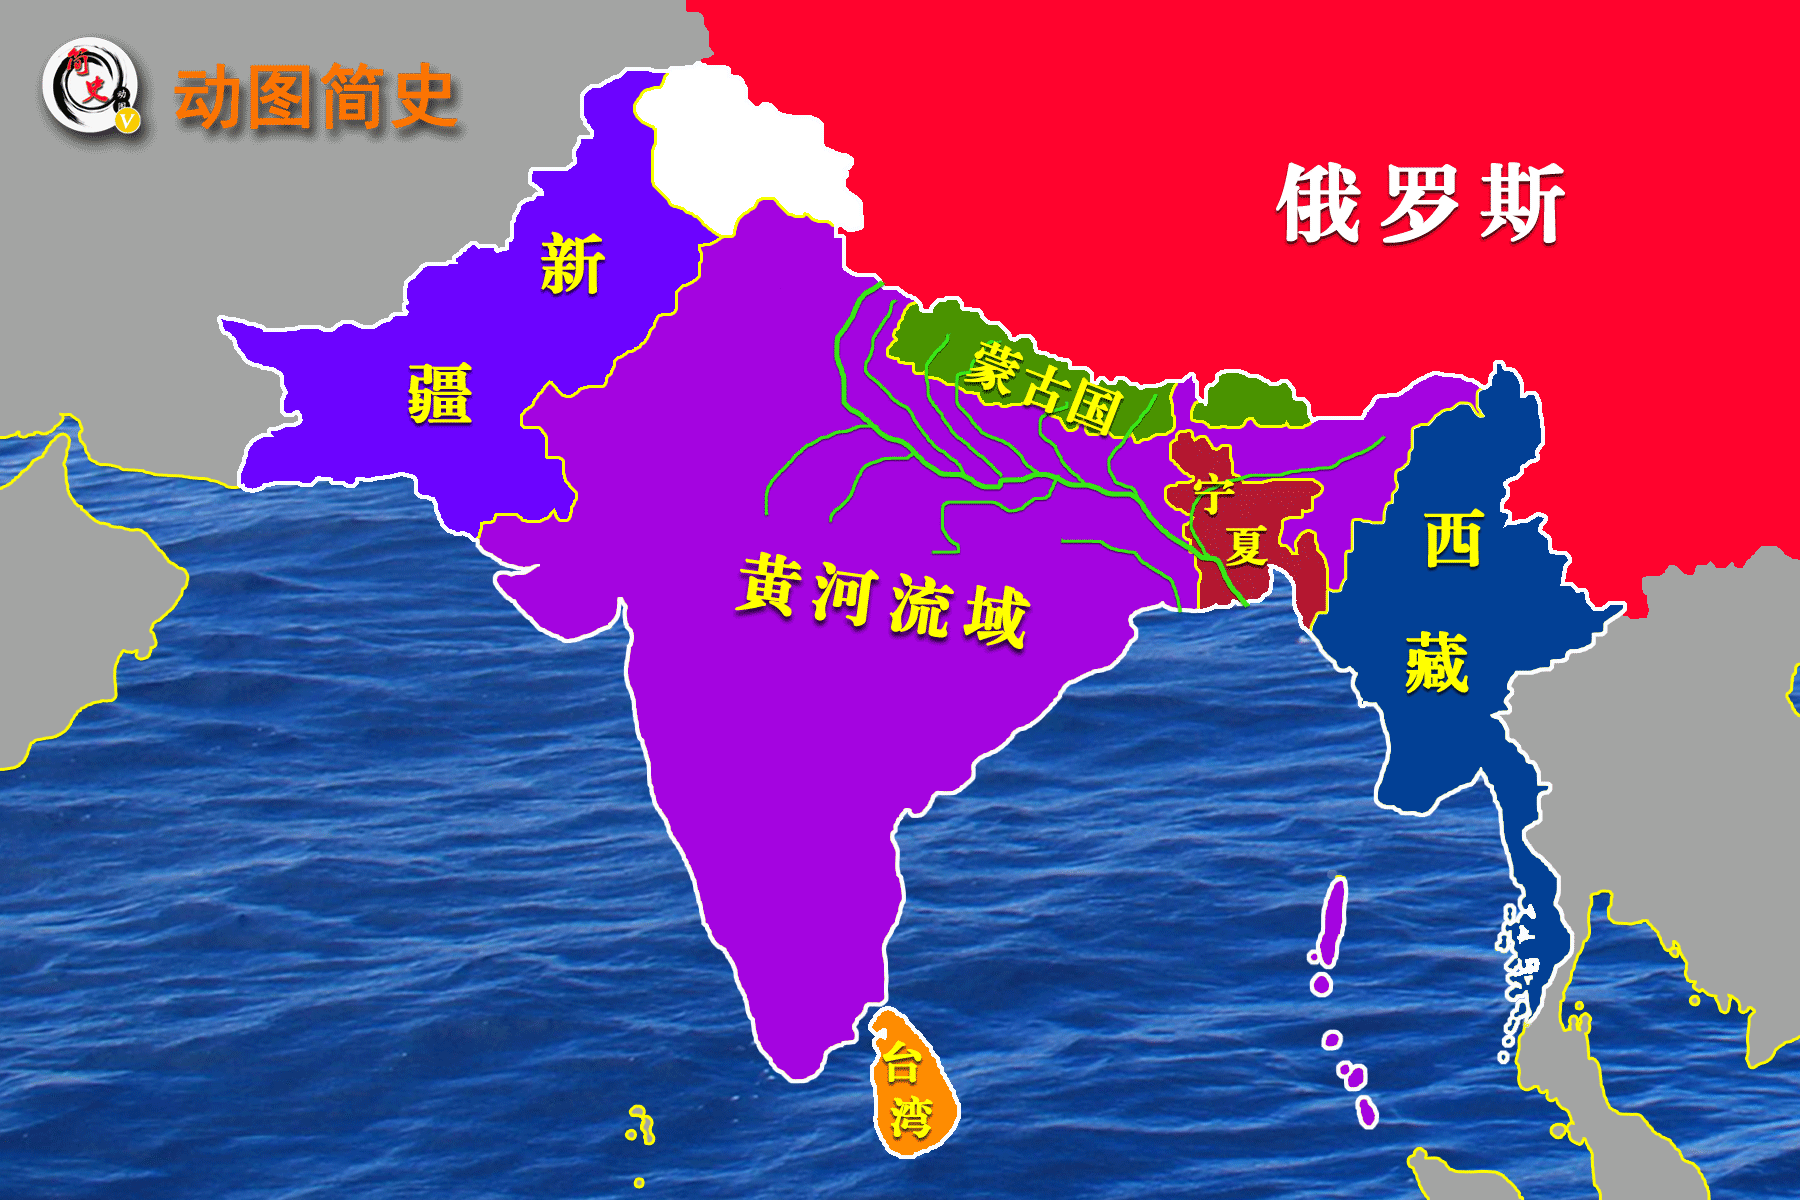 从地图上分析,为什么印度本质上就是翻版的中国?